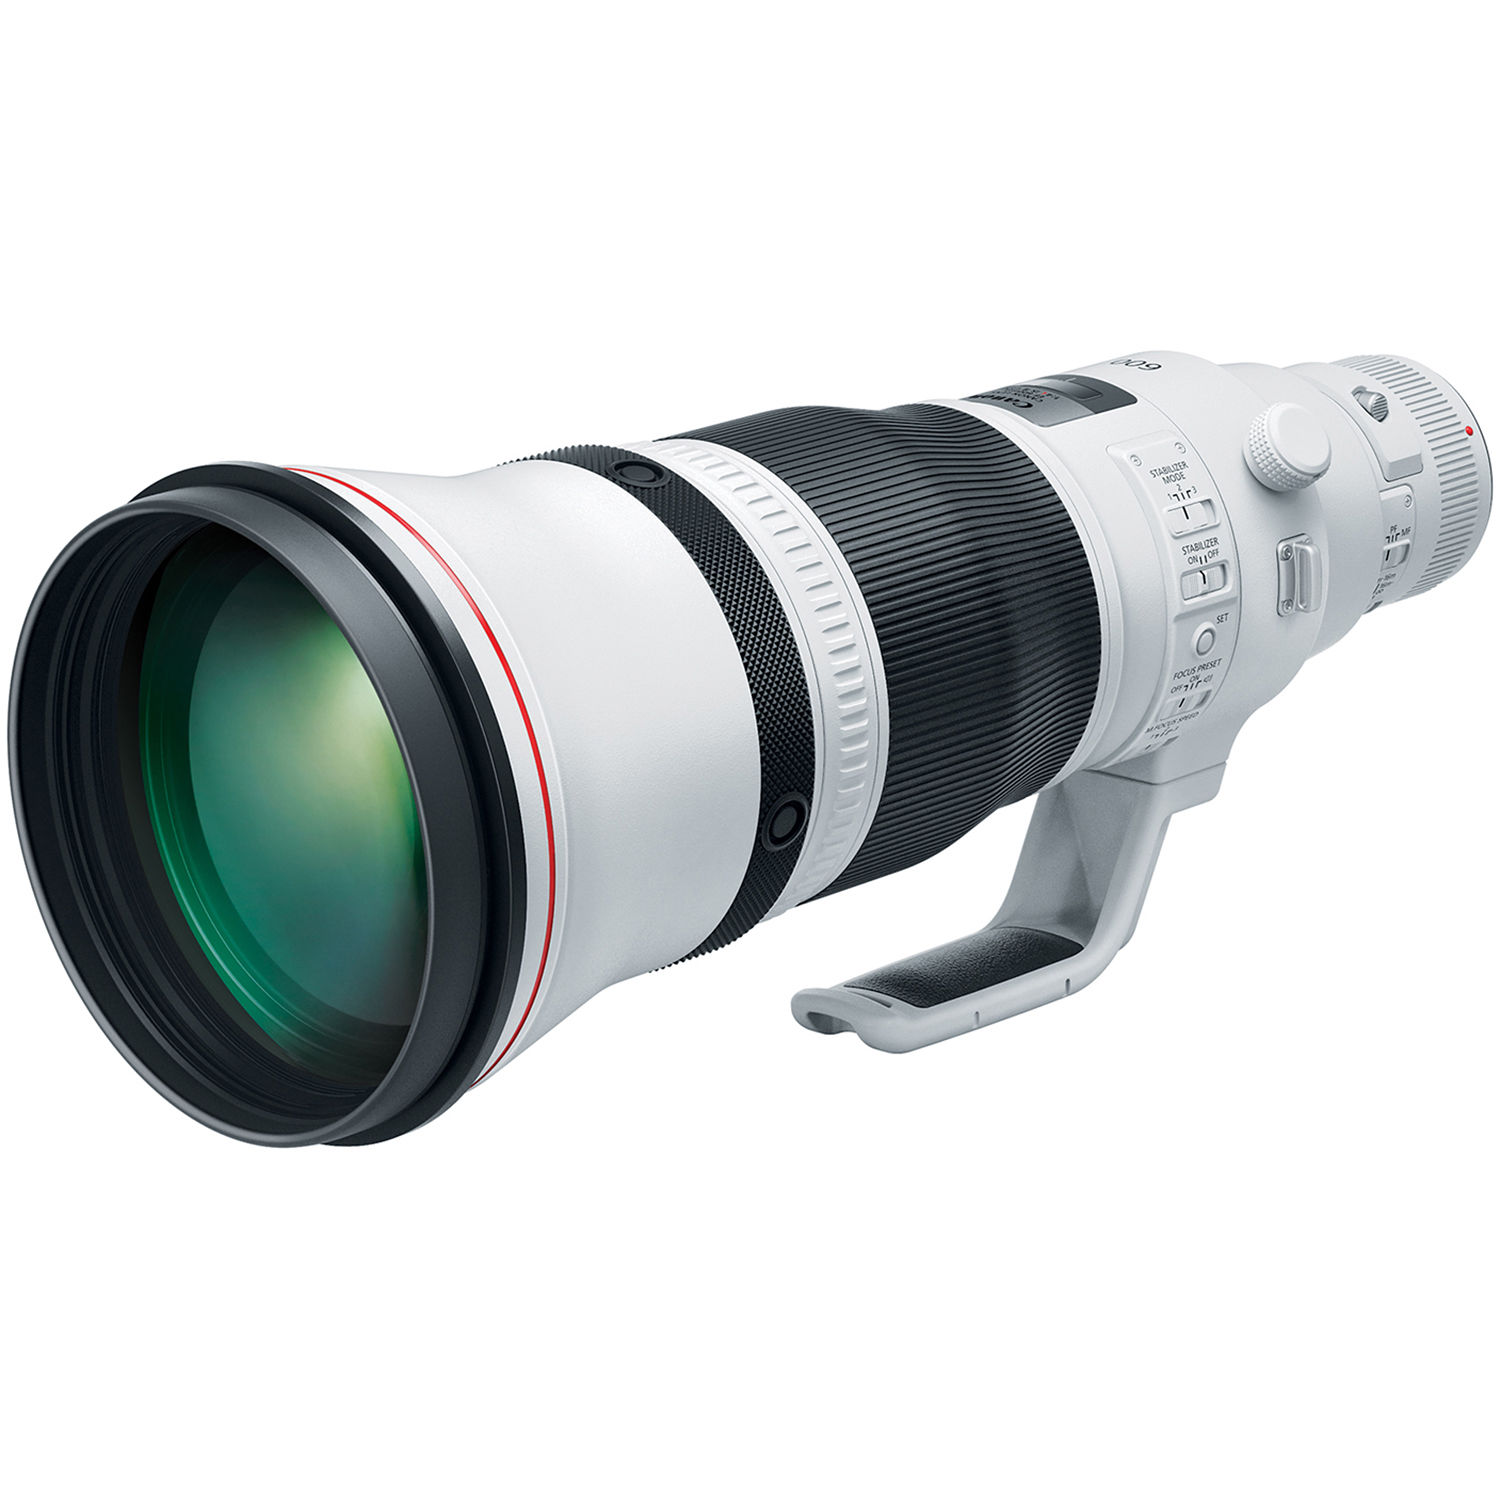 Canon Ef 600mm F 4l Is Iii Usm Lens 3329c002 B H Photo Video